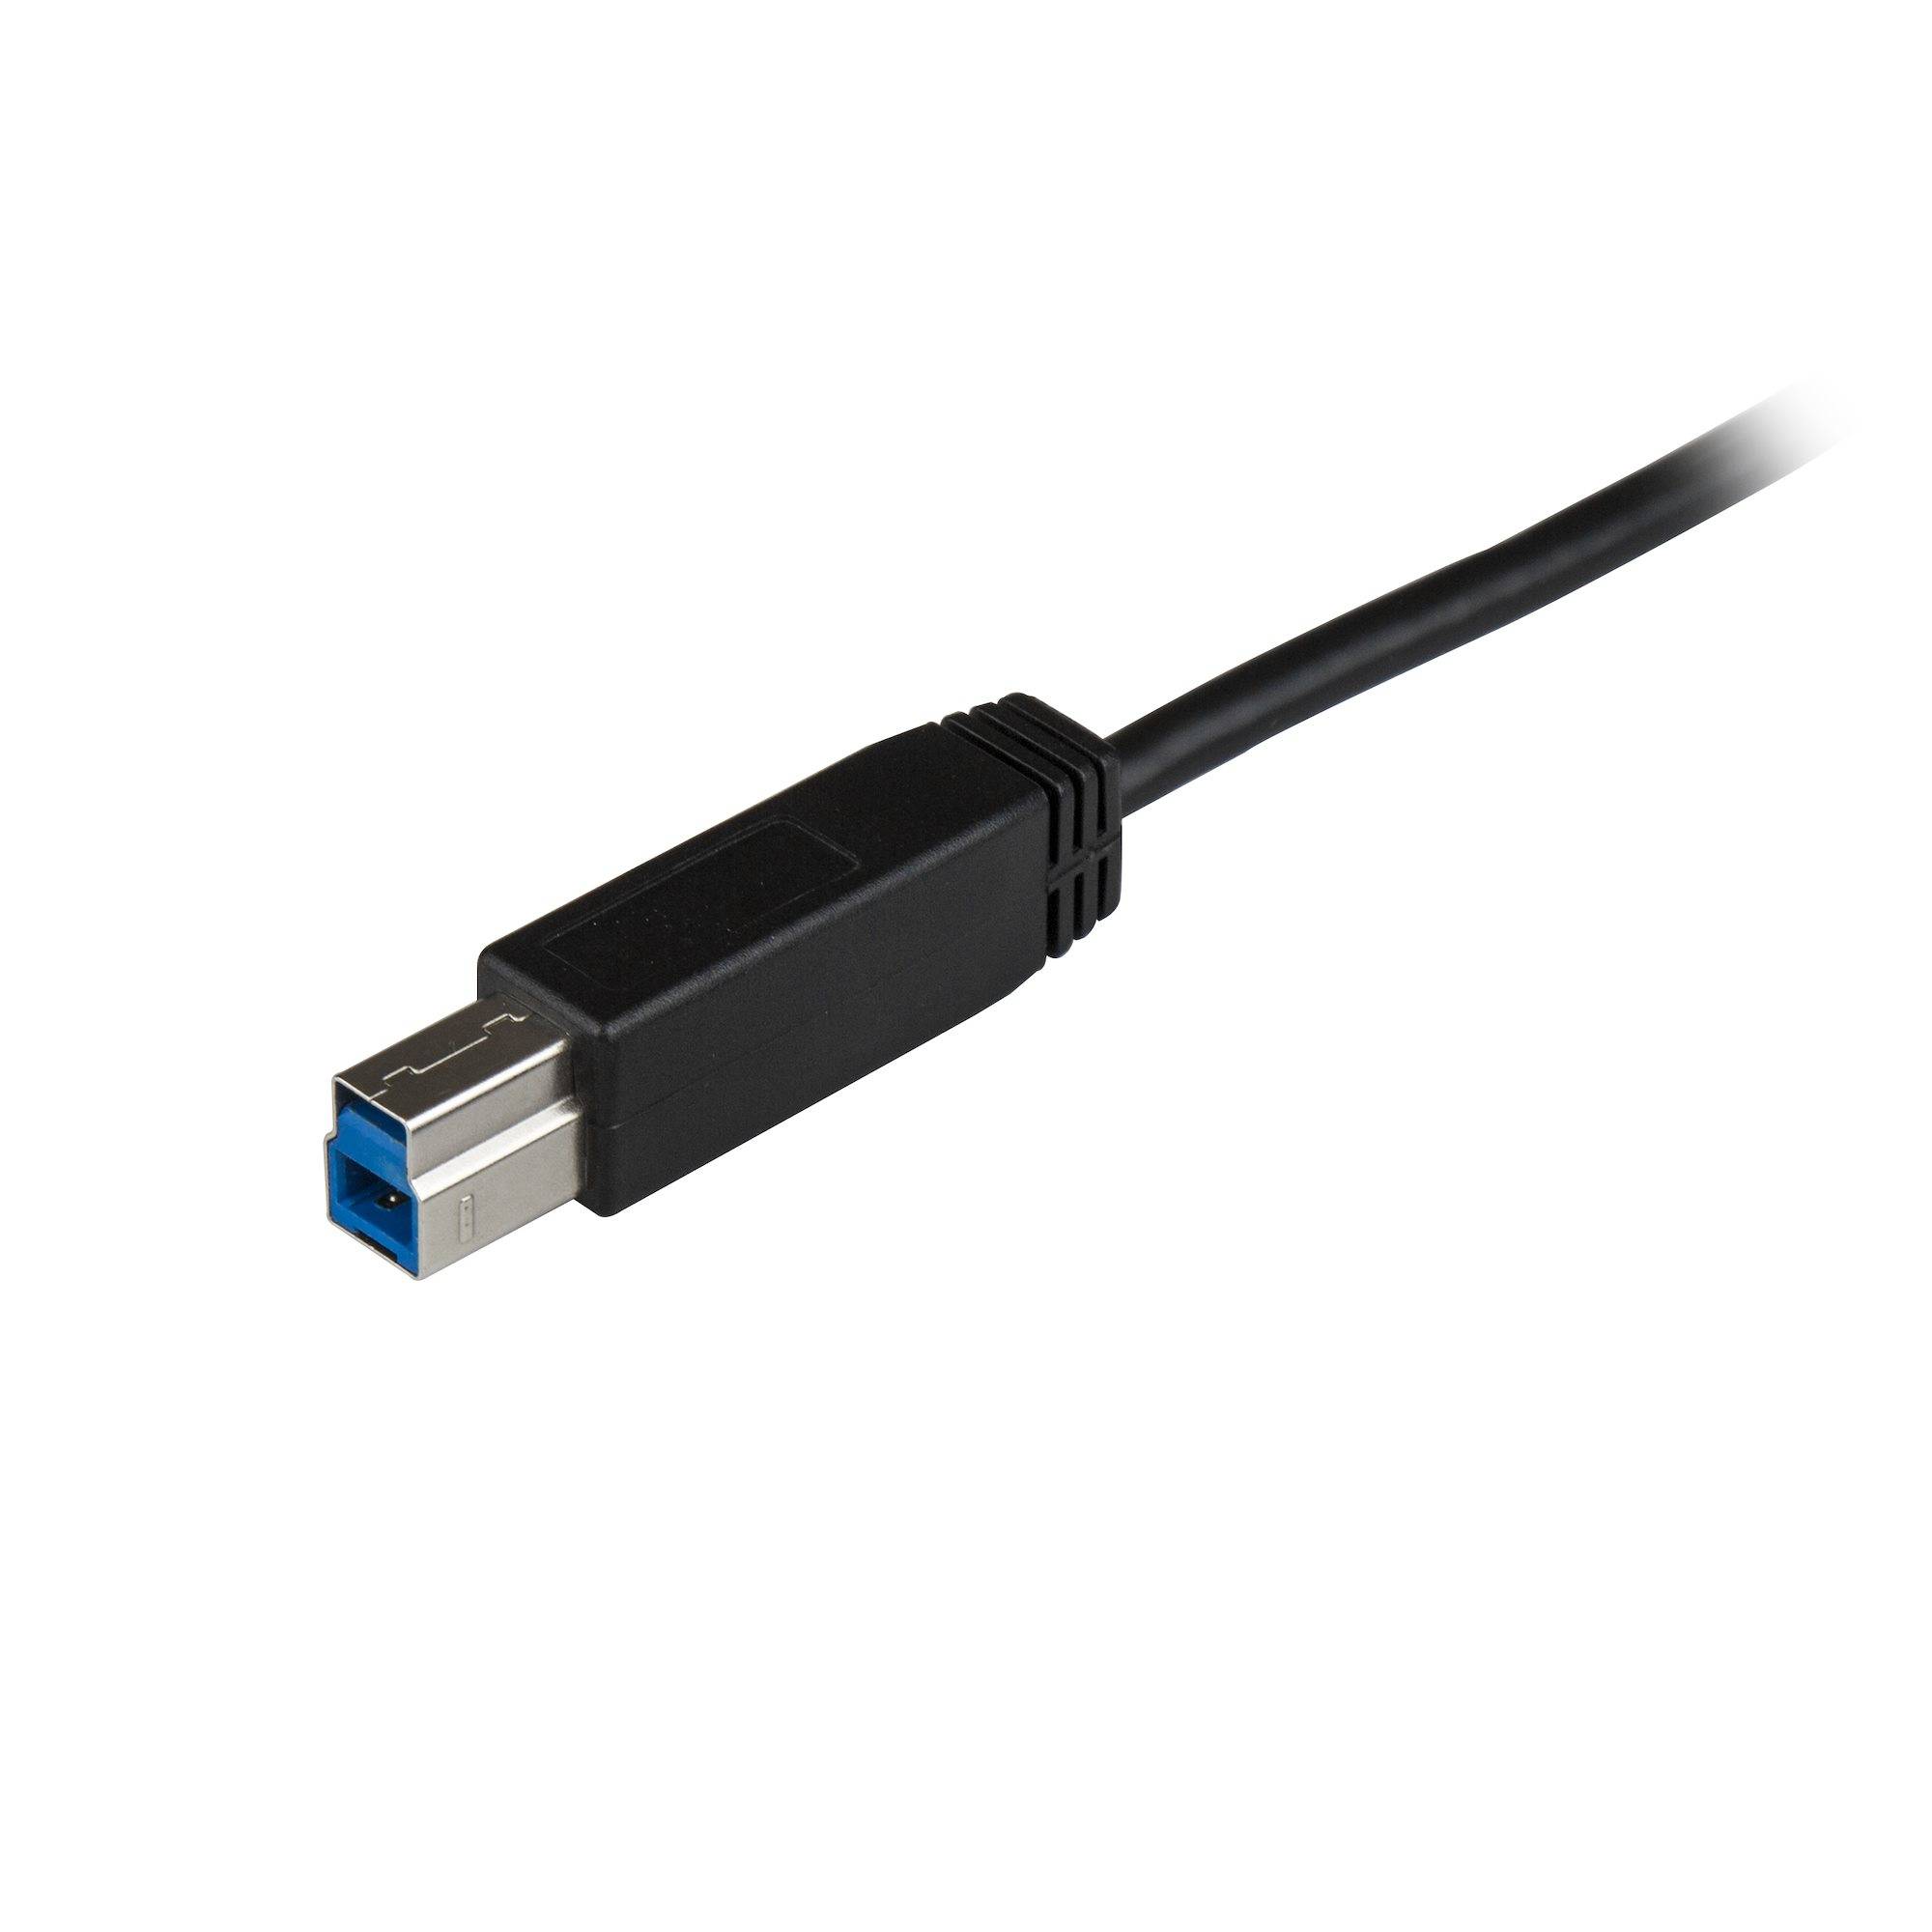 Rca Informatique - image du produit : 3FT USB TYPE C TO USB TYPE B CABLE USB 3.1 GEN 2 10GBPS